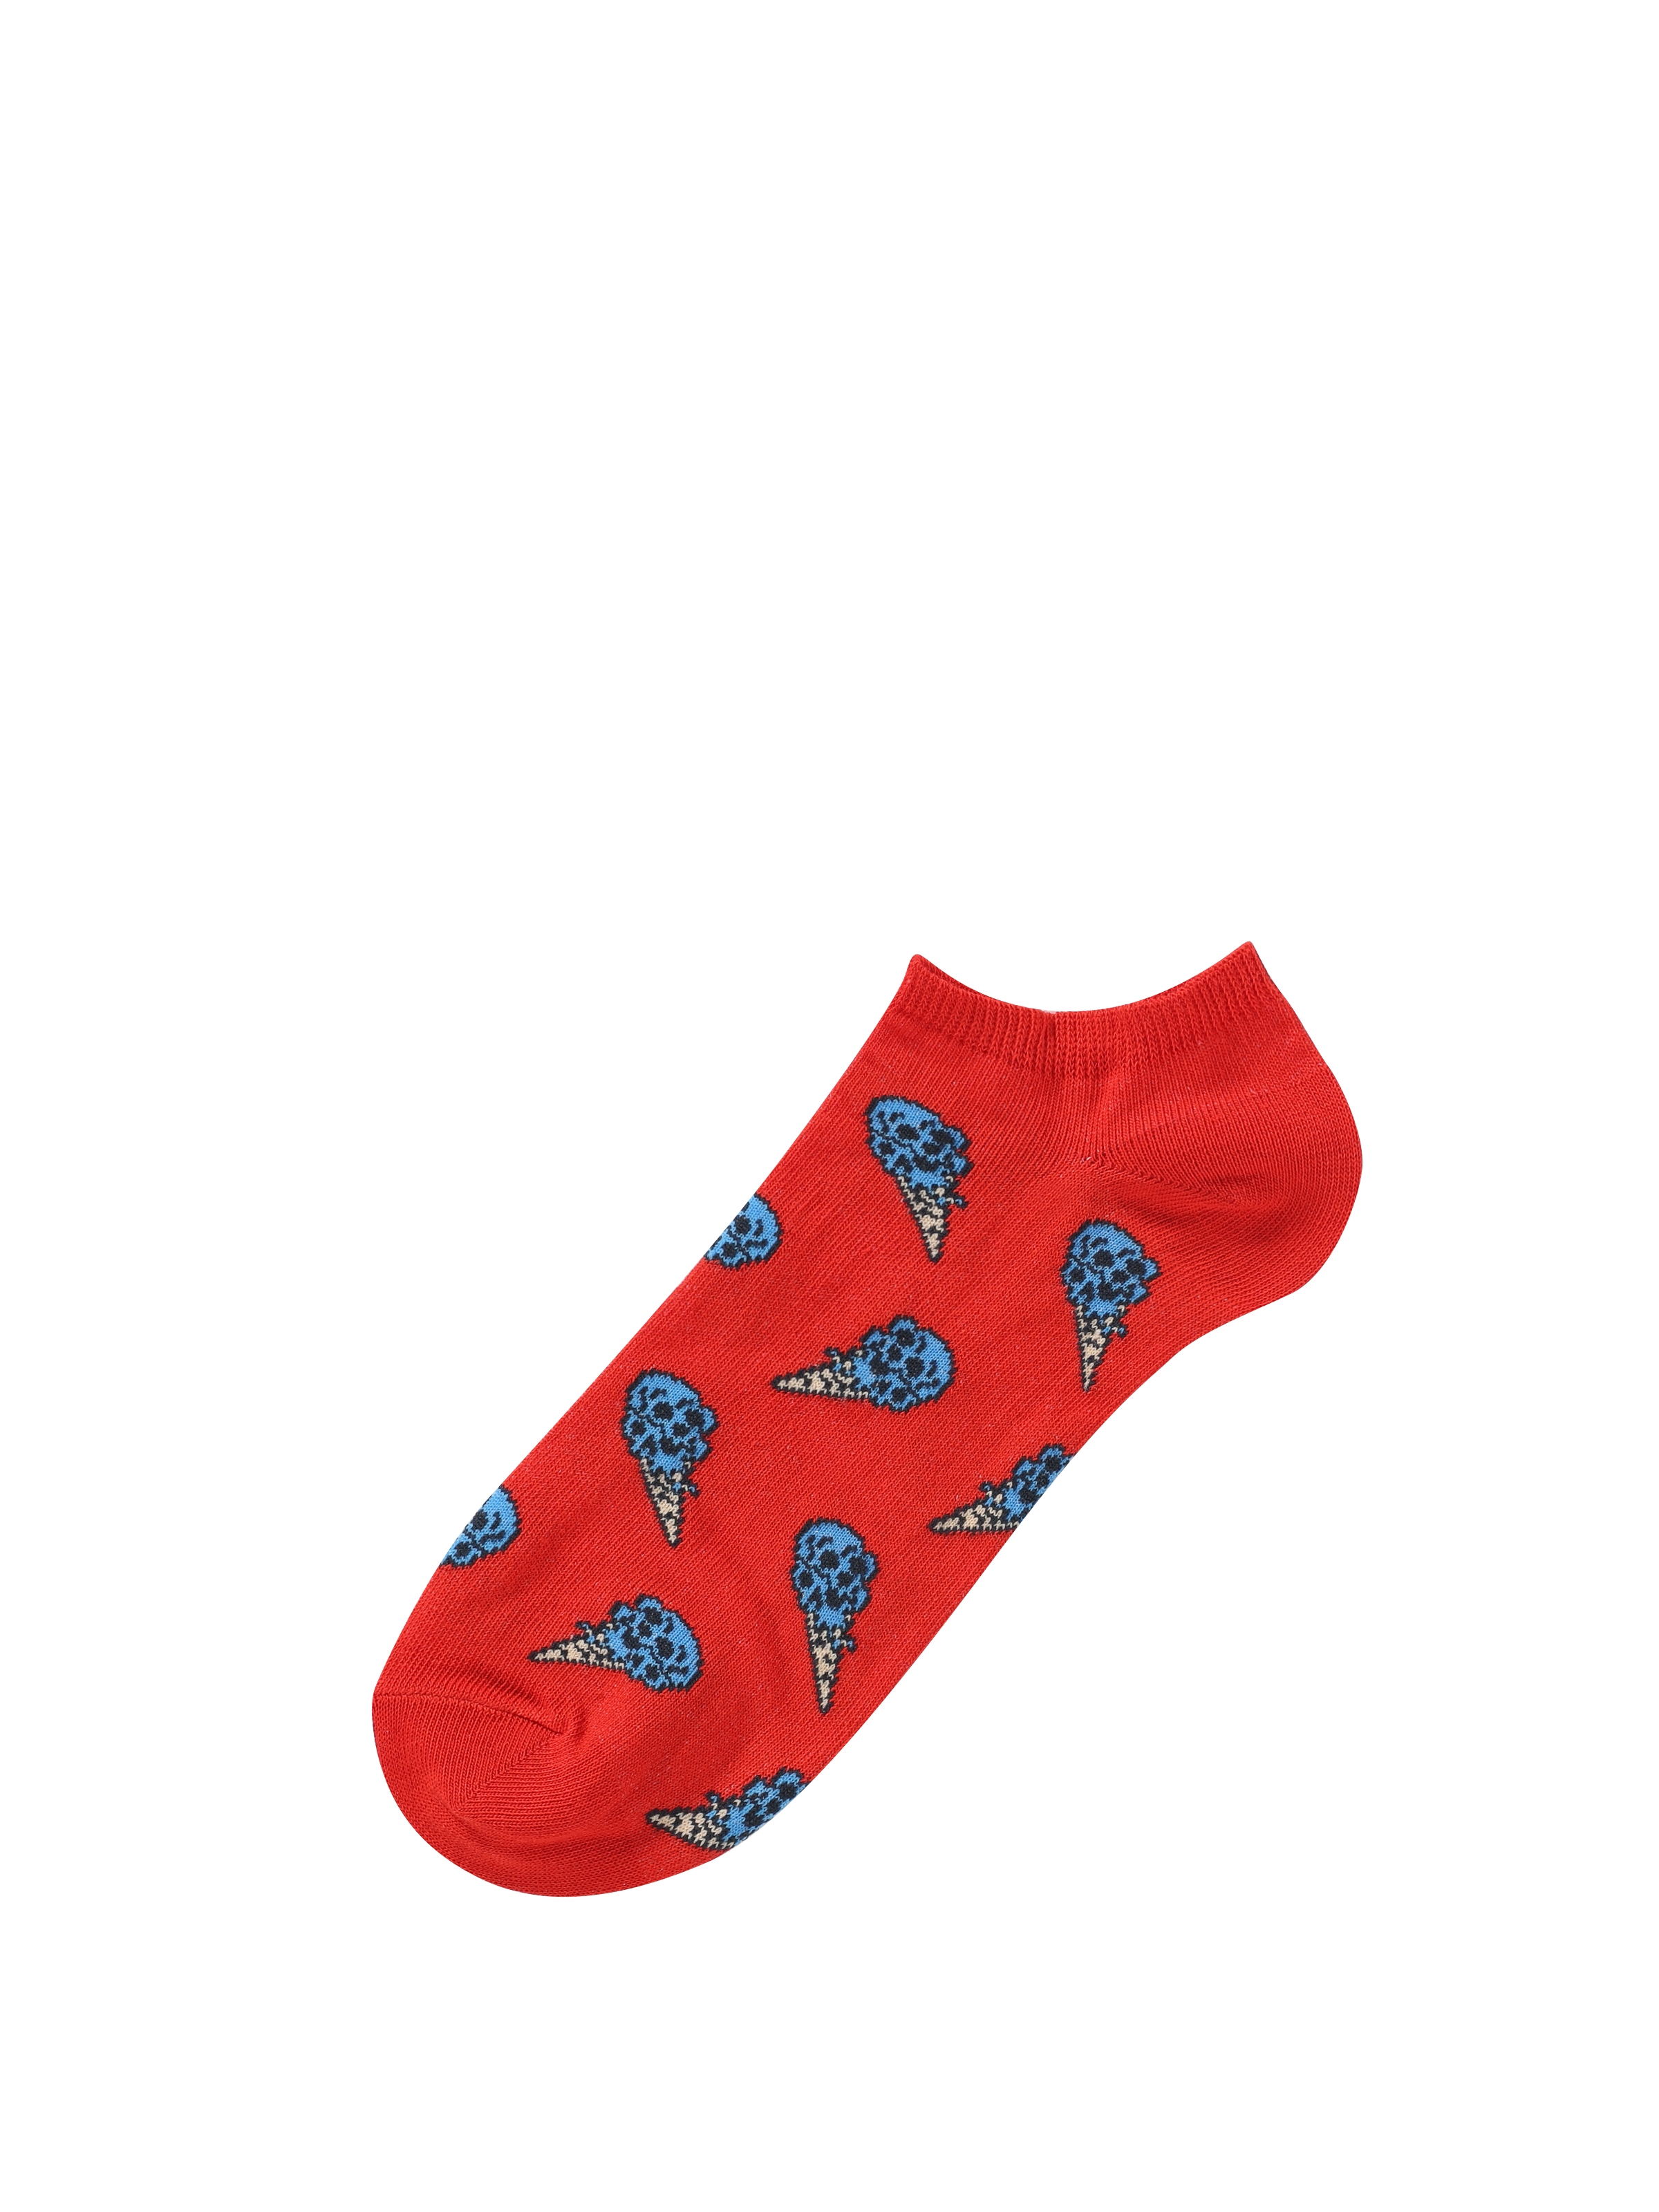 Baskılı Kırmızı Erkek Çorap Cl1064169